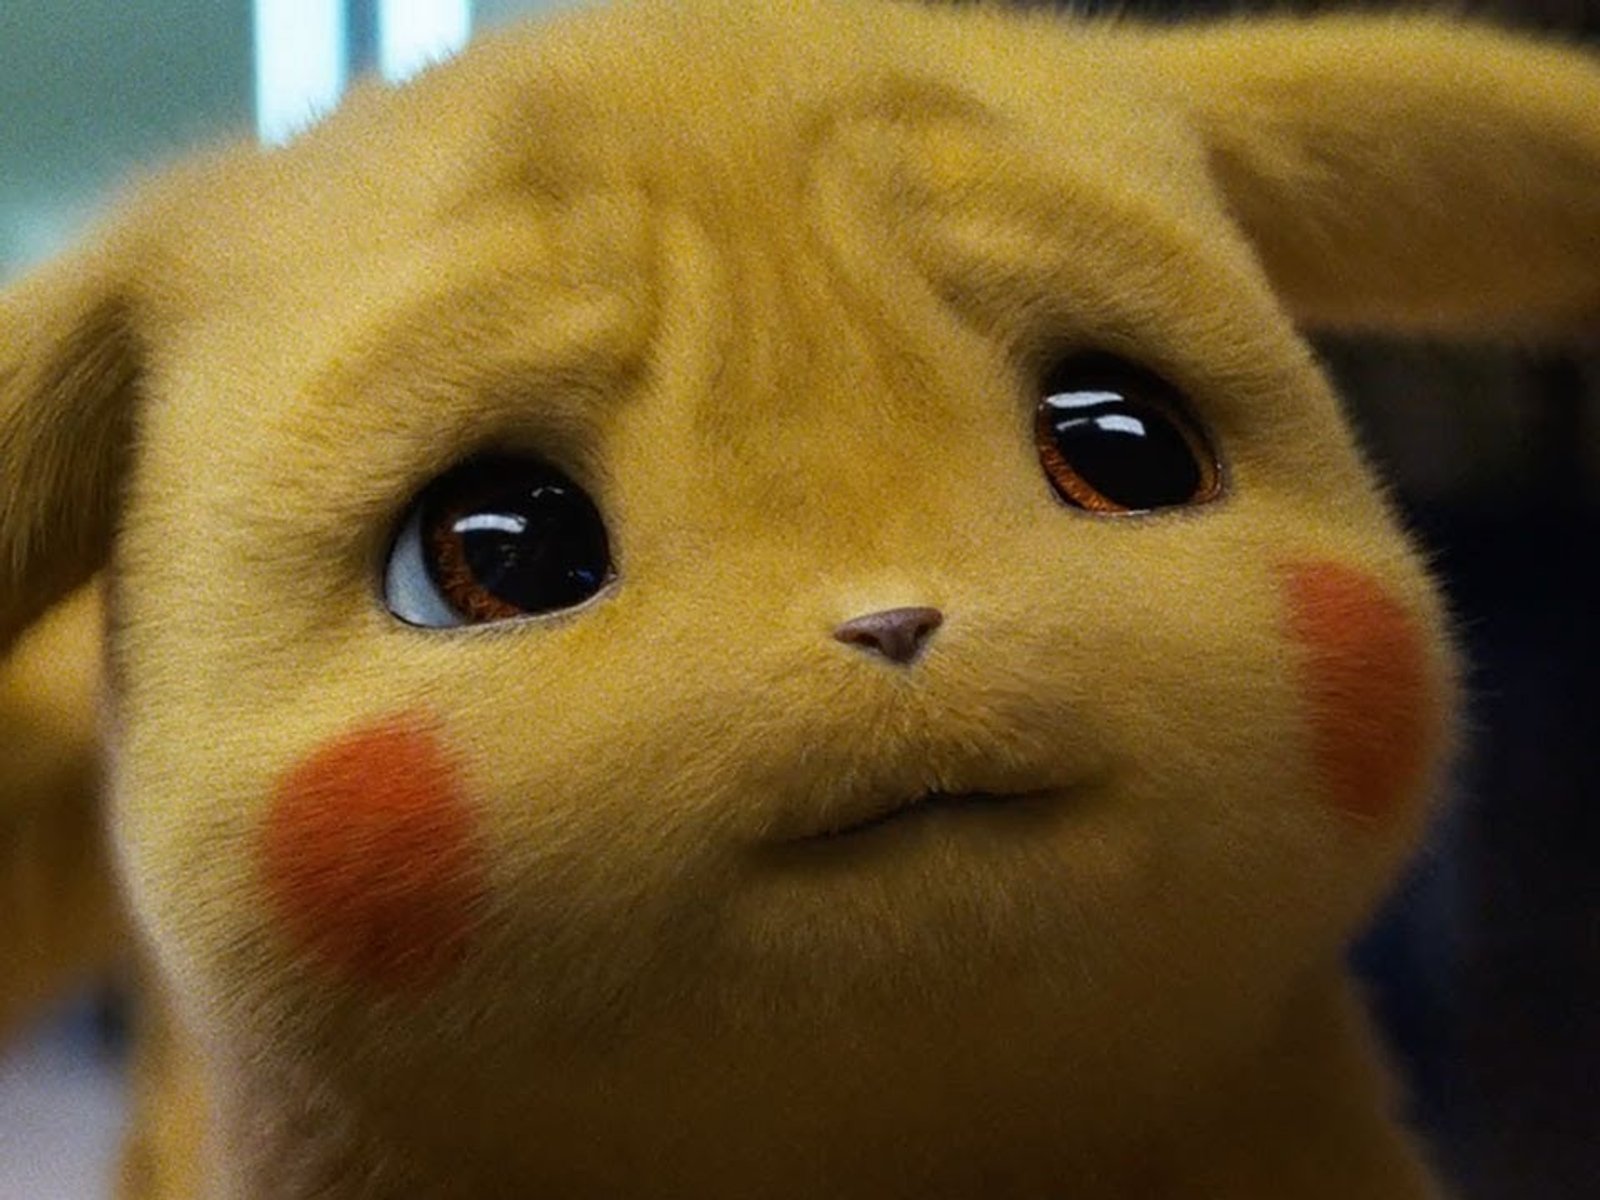 Stofftier Detektiv Pikachu Pokemon Plüsch Plüschtiere Kuscheltier Figur Film Neu